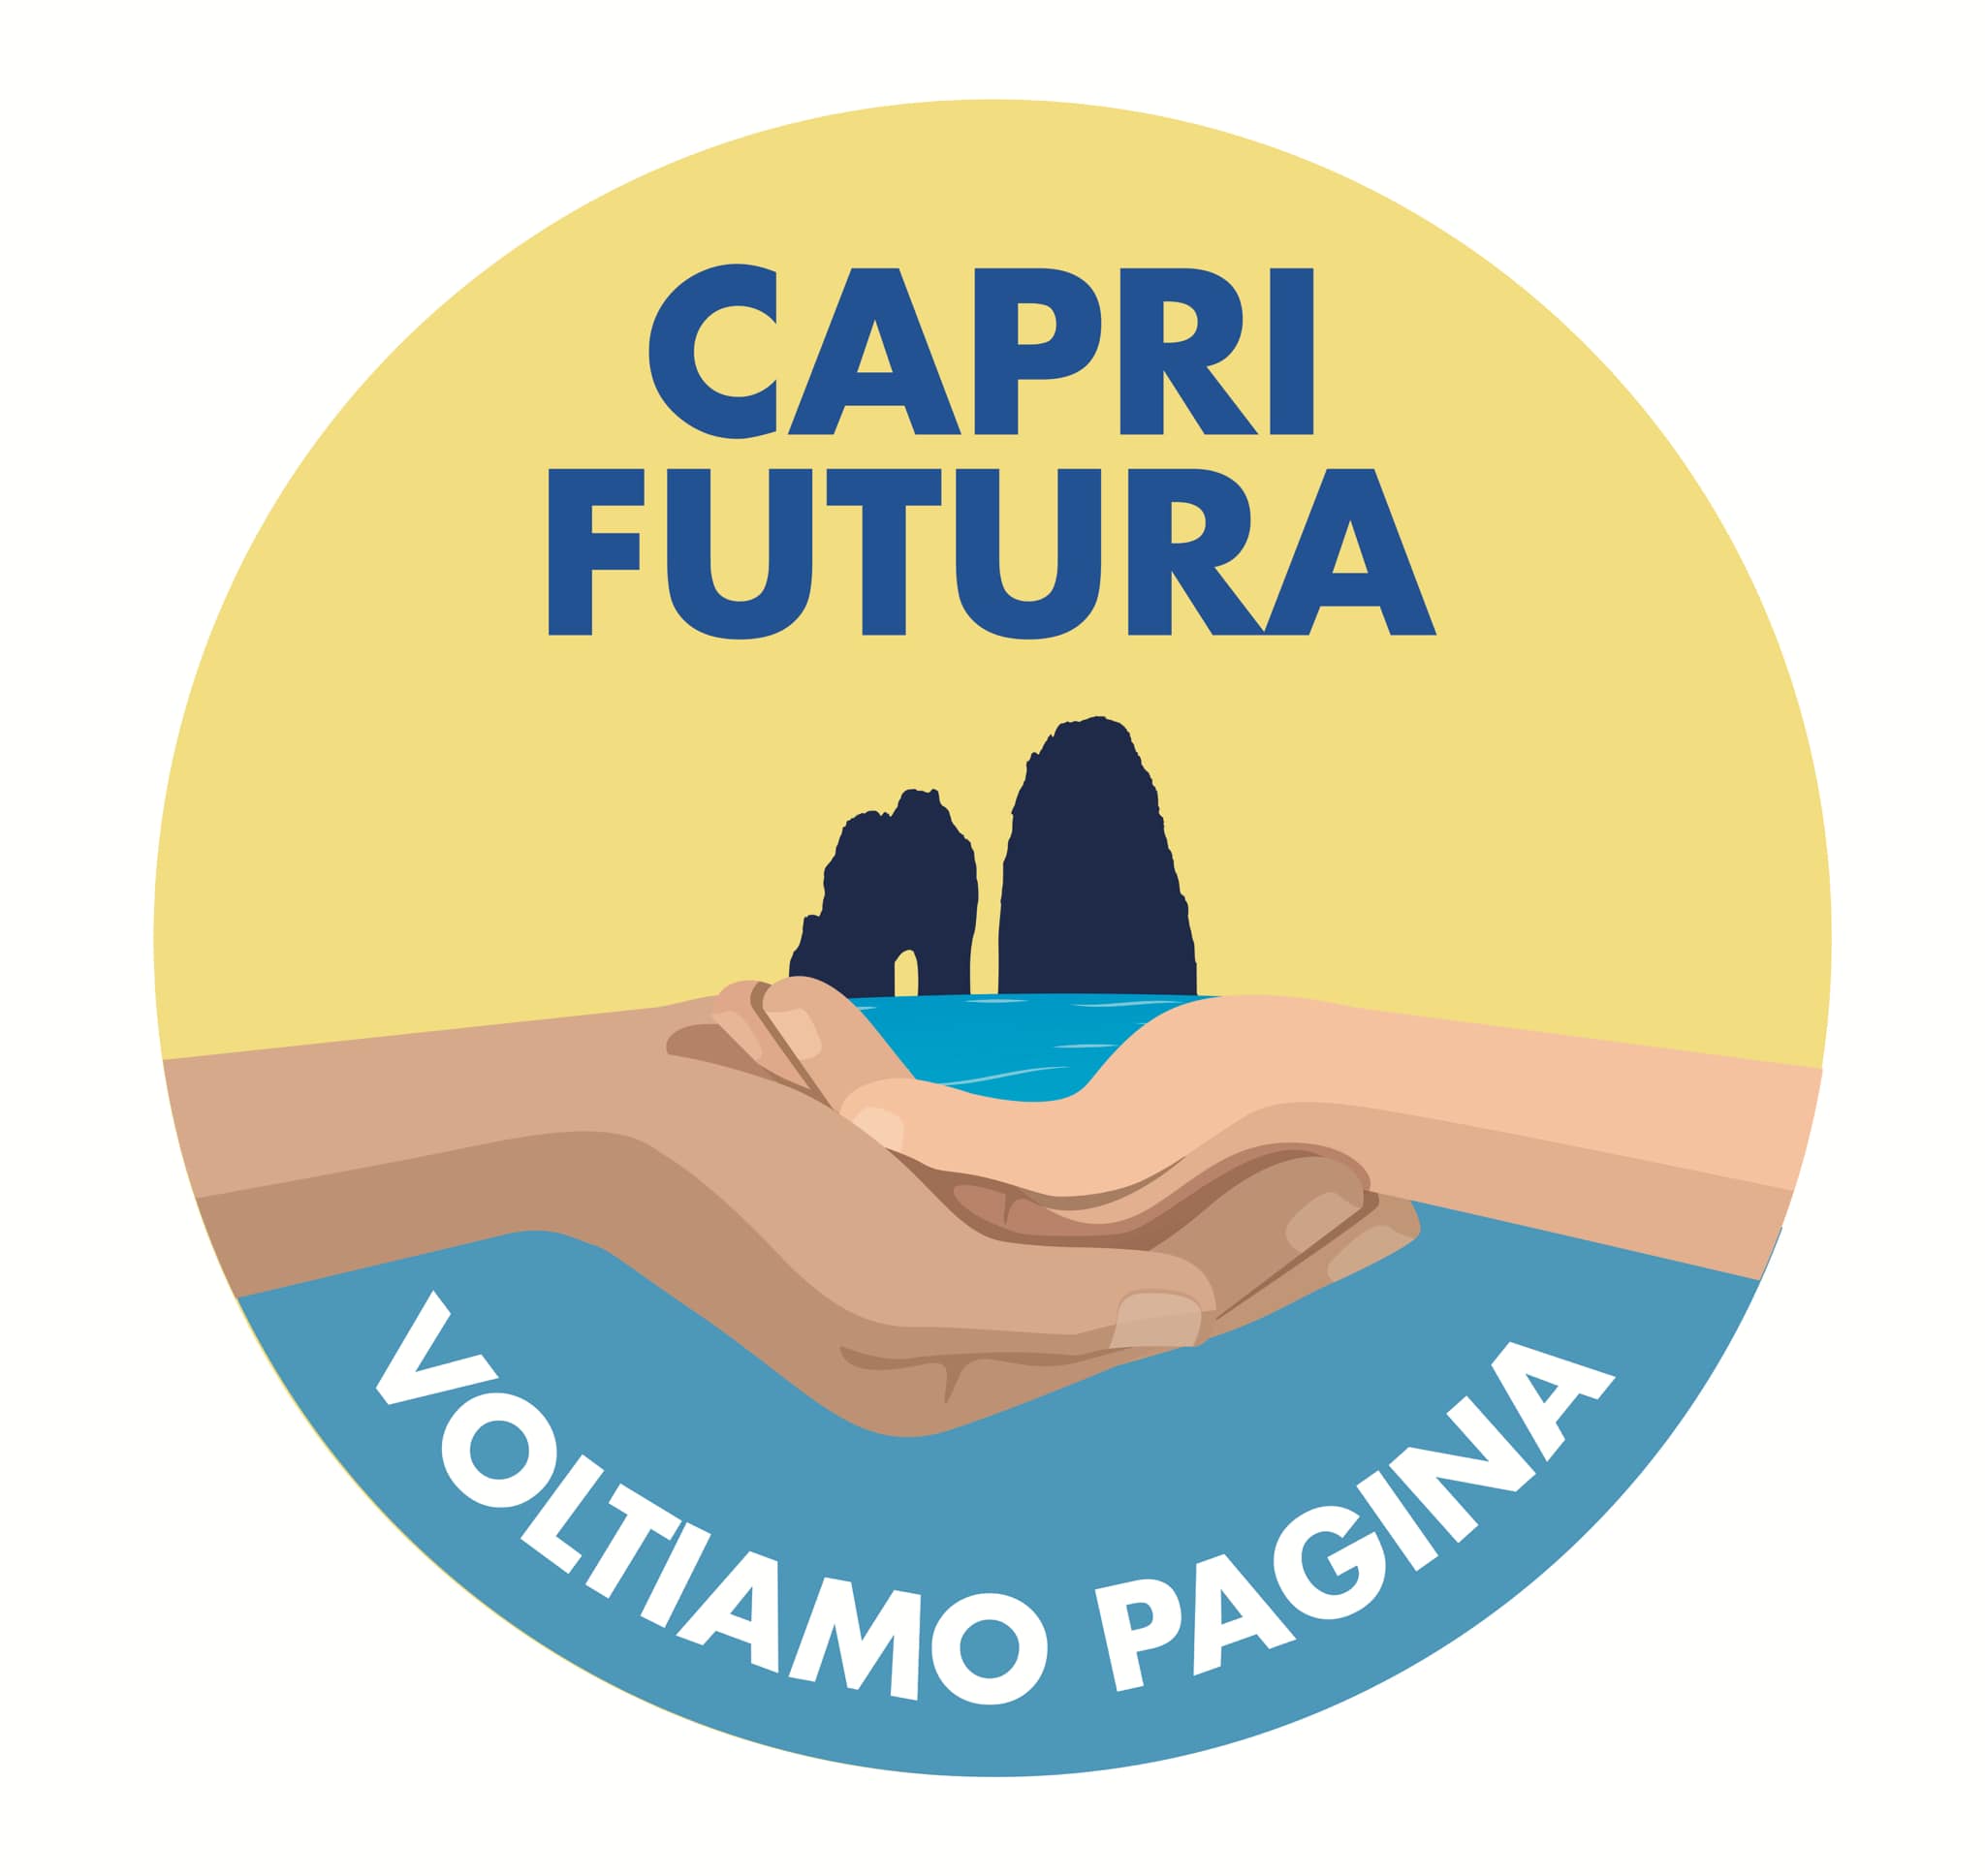 Verso le elezioni comunali: venerdì incontro pubblico promosso da Capri Futura